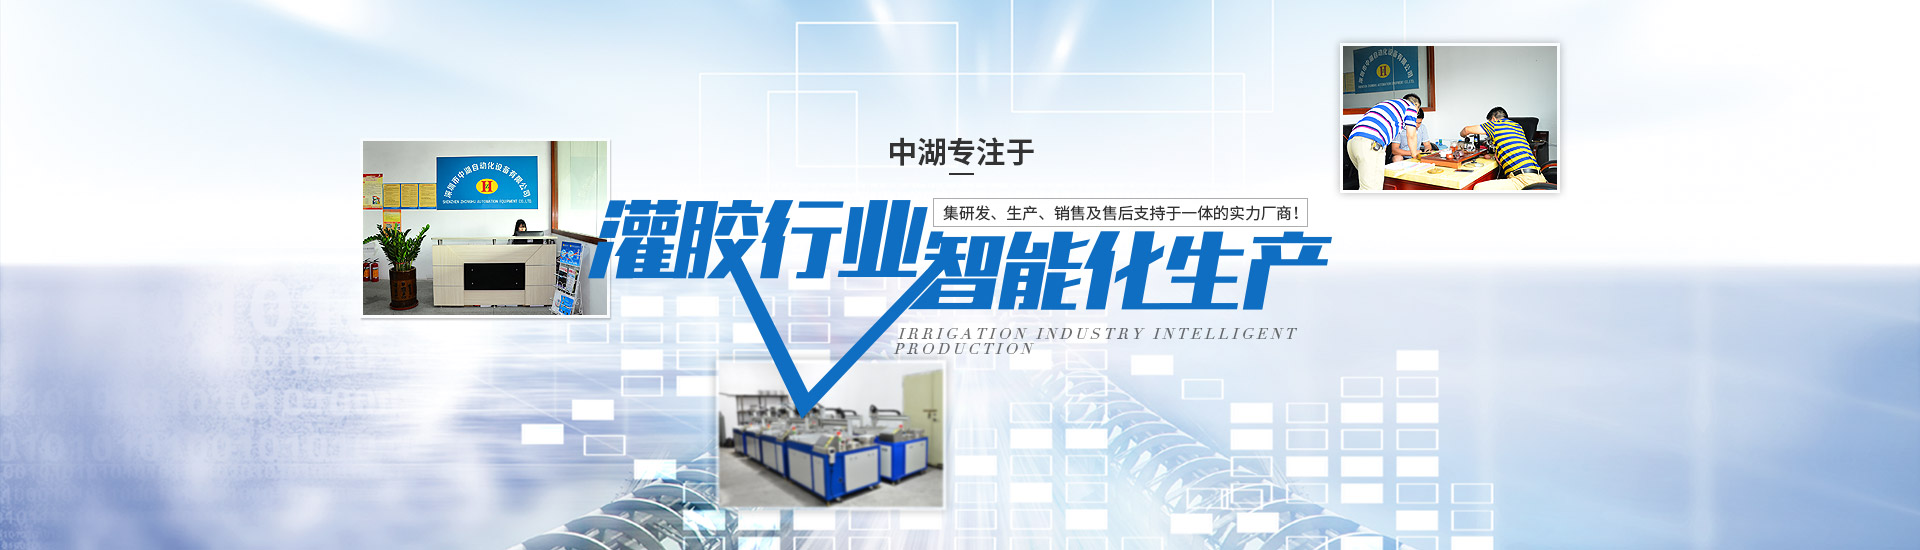 專(zhuan)注于(yu)灌膠機行業智能化生產